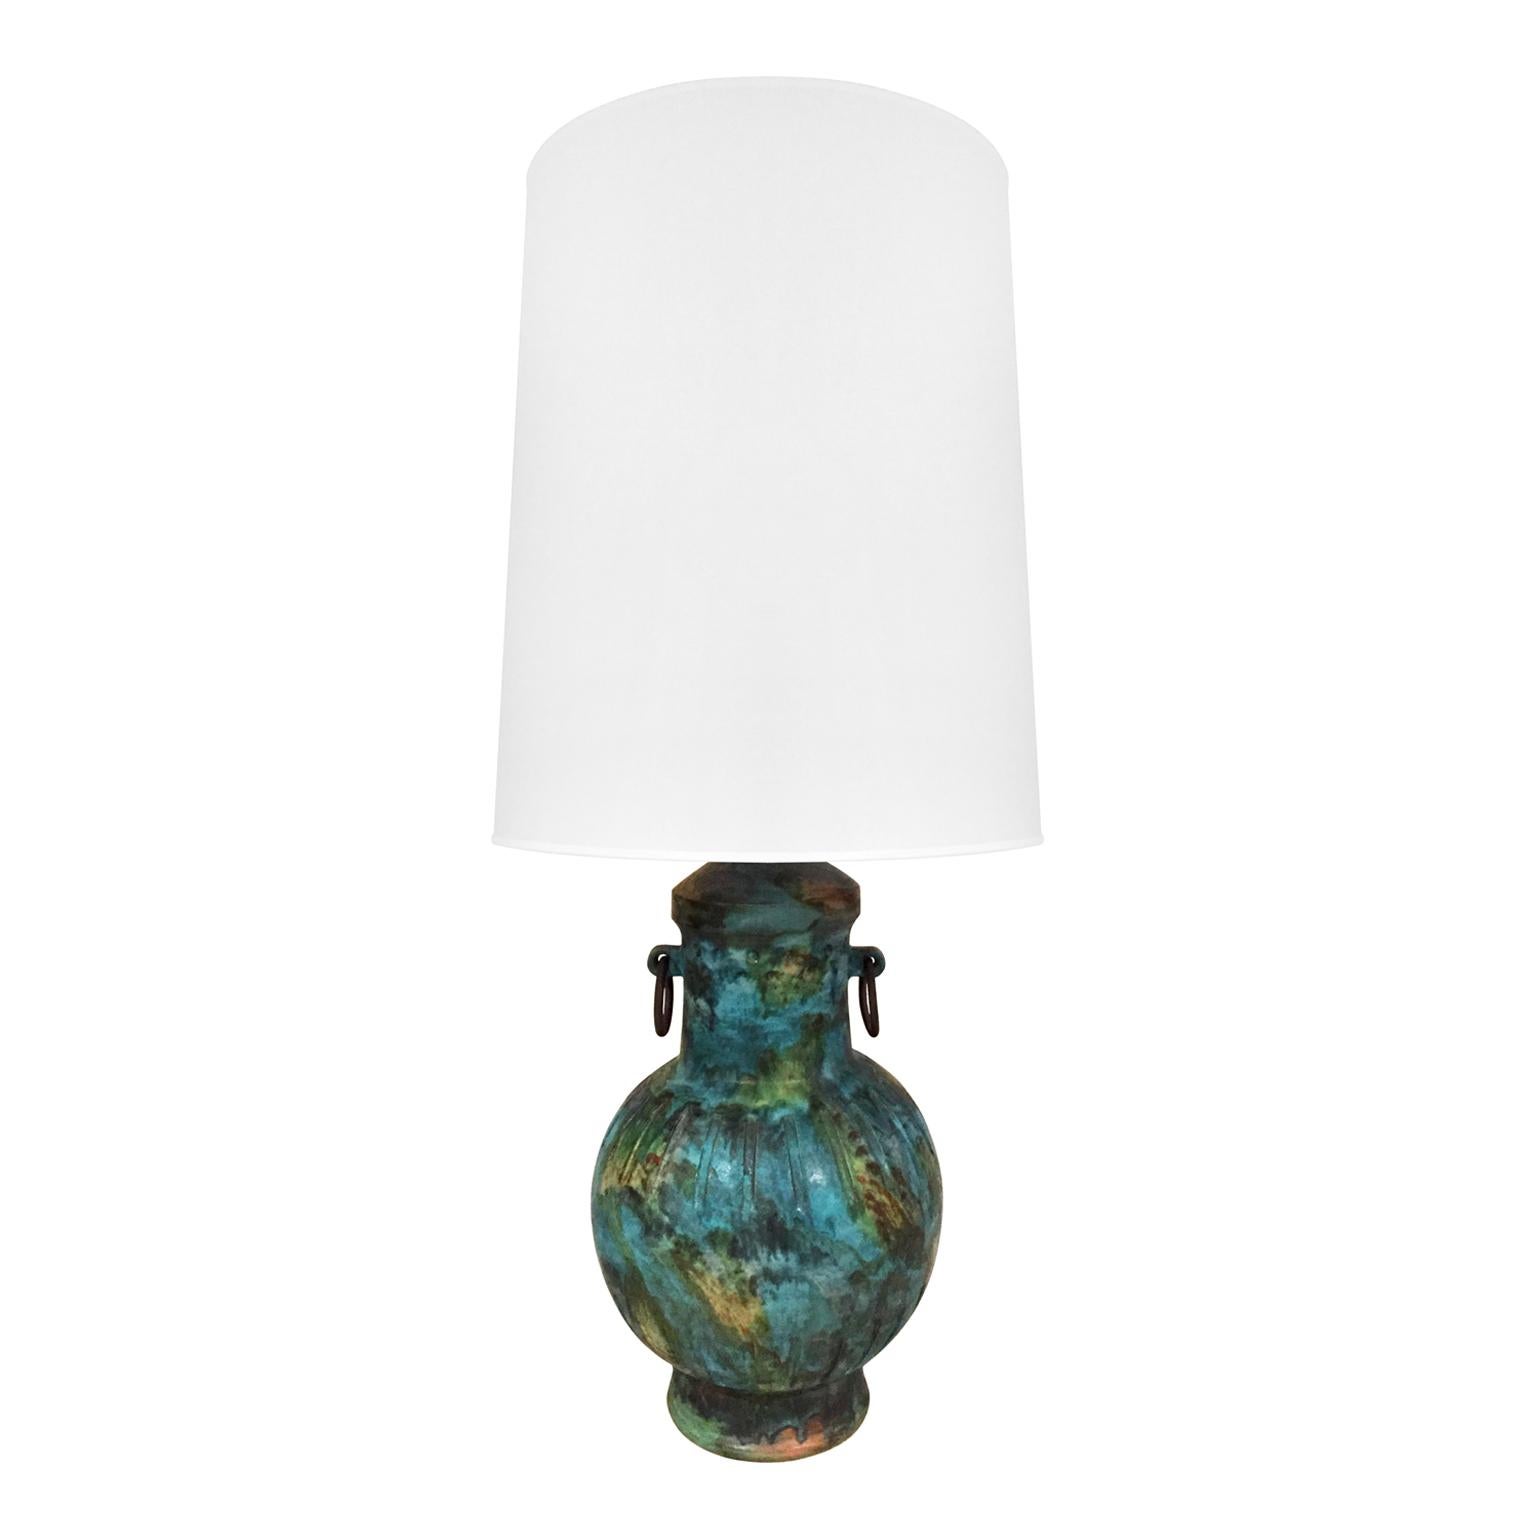 1960s Alvino Bagni Raymor Ceramic Jar Lamp in Blue Green Glaze For Sale